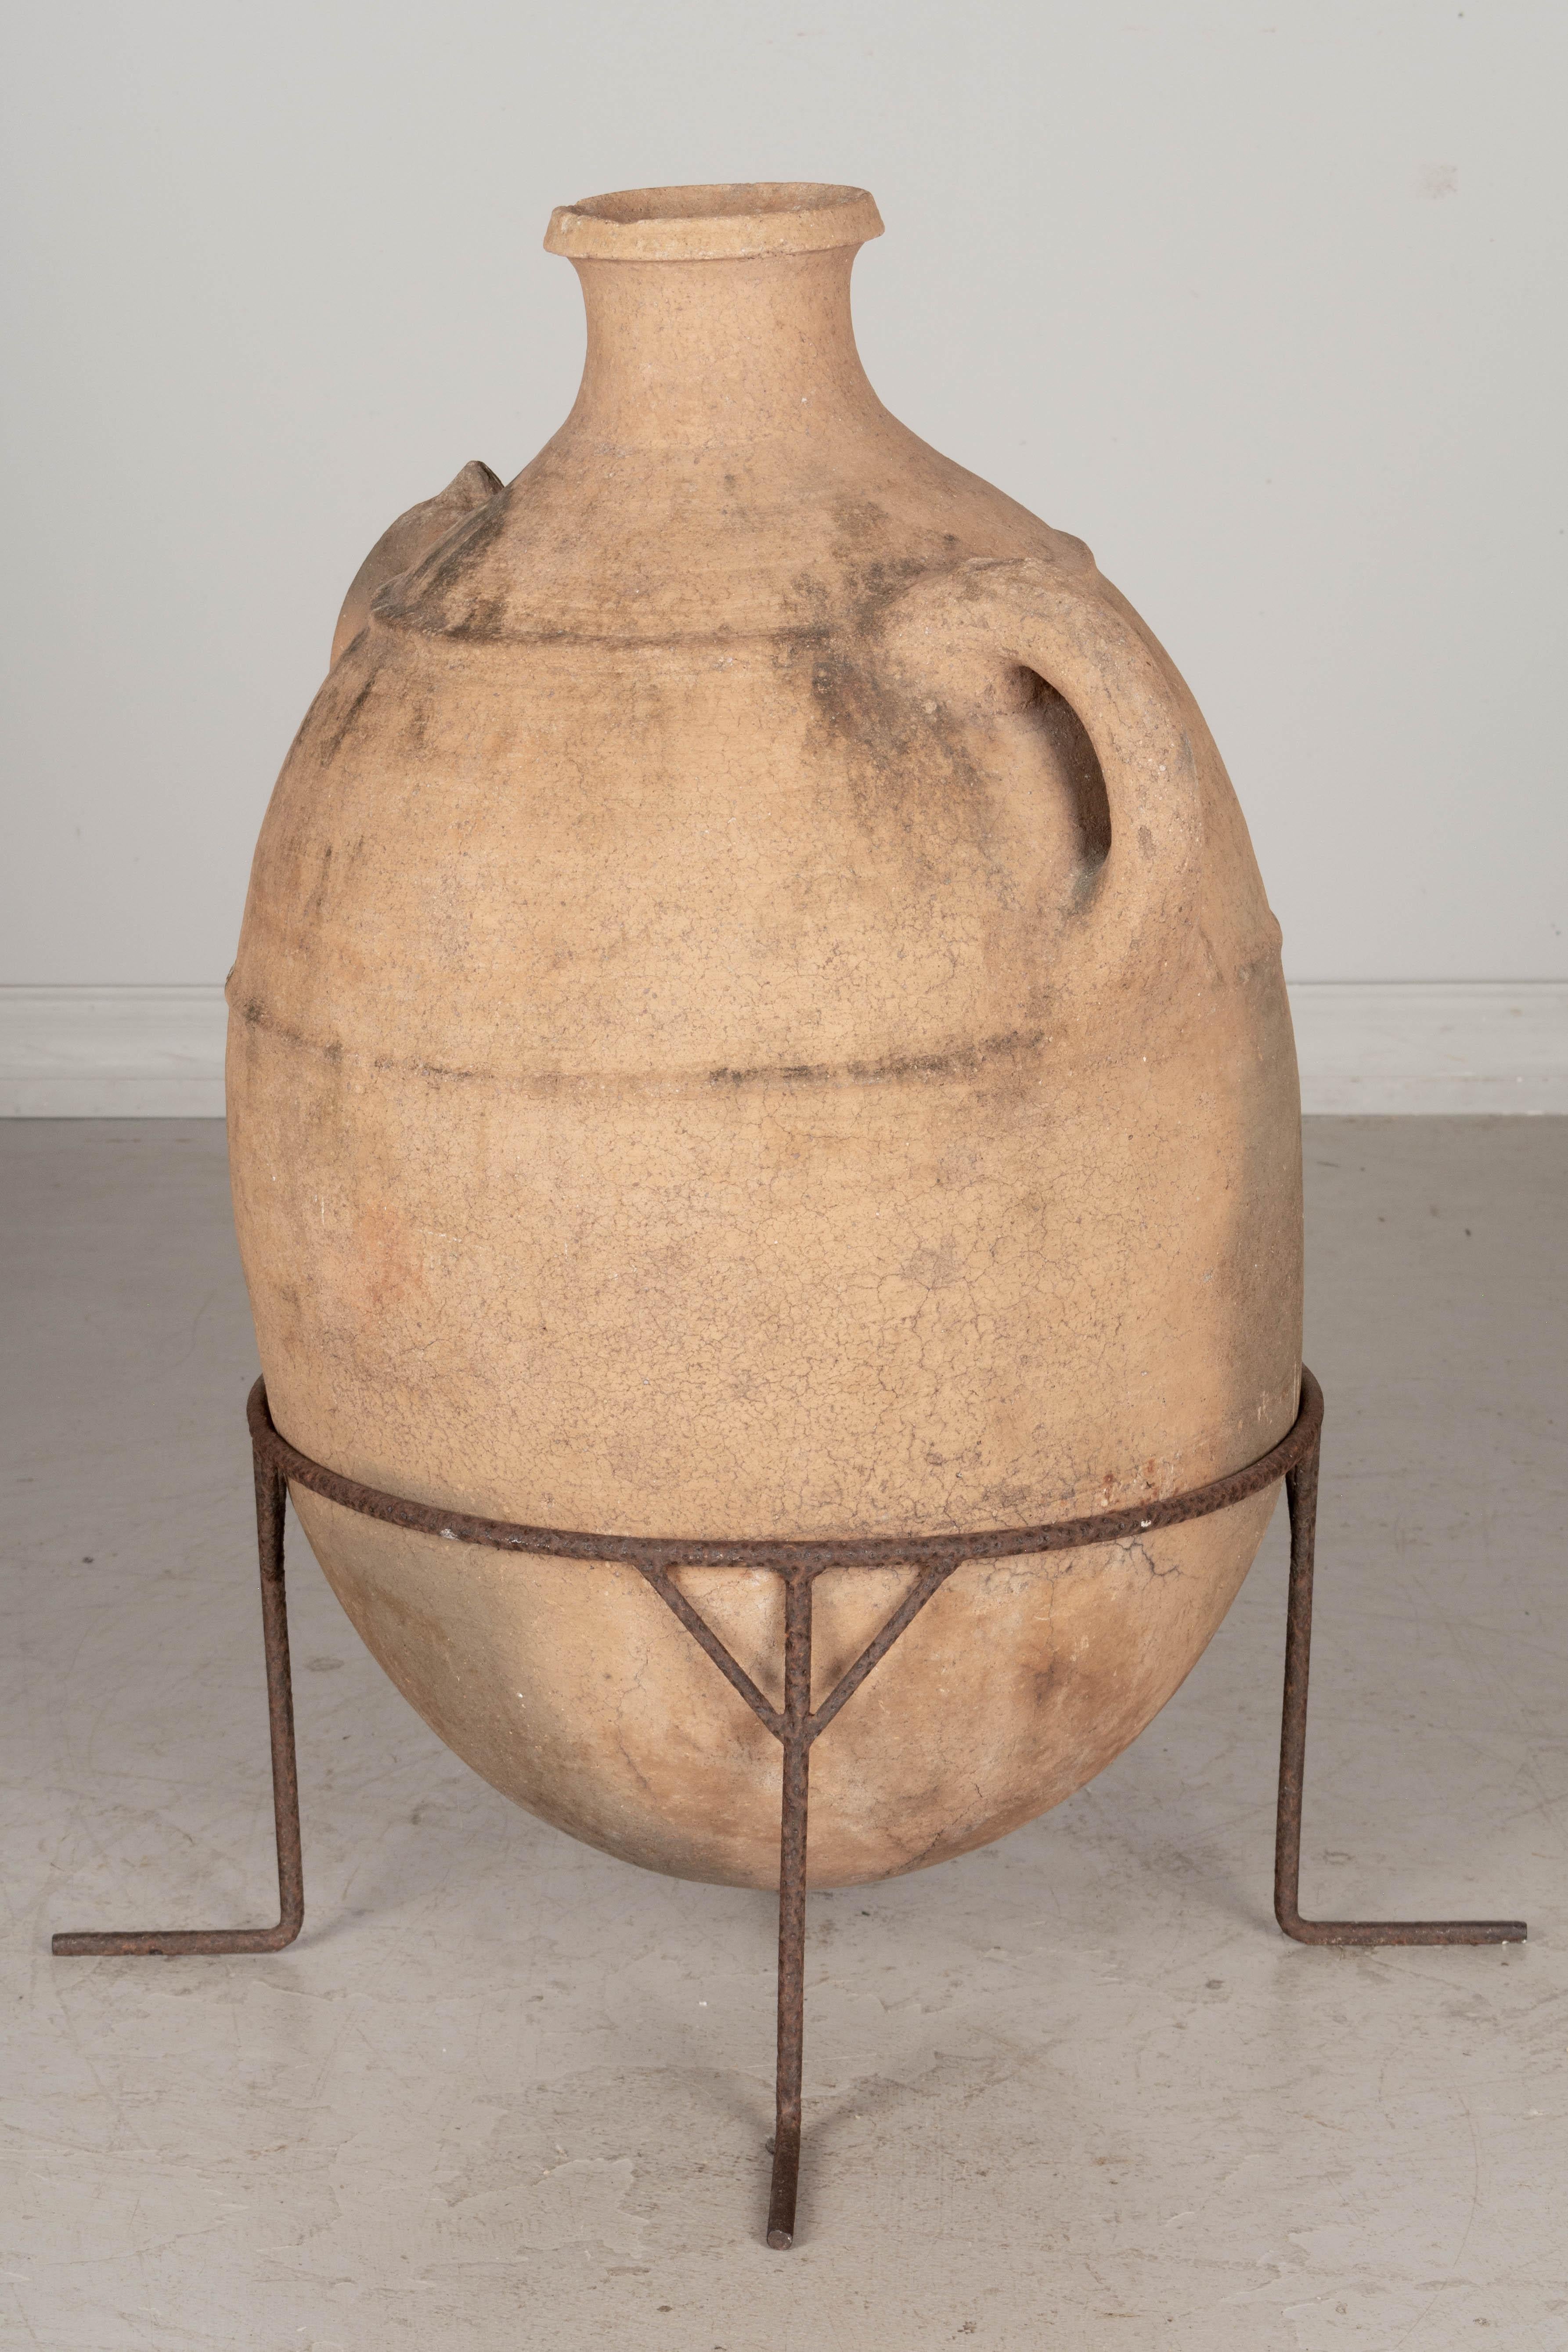 moroccan clay water jug